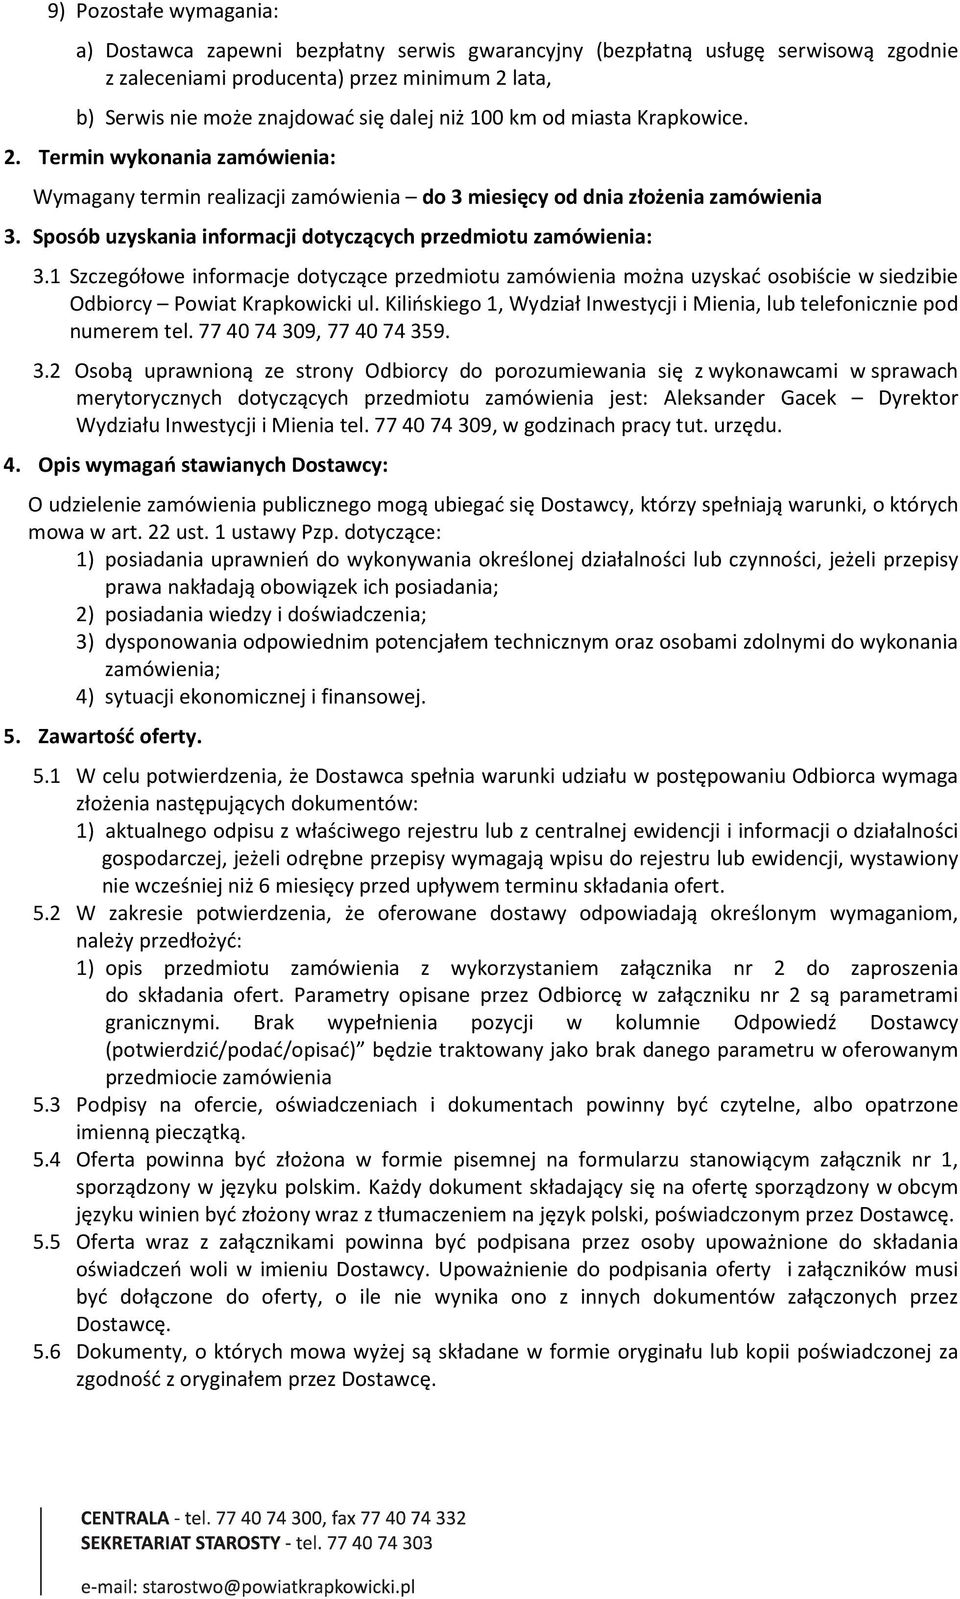 Sposób uzyskania informacji dotyczących przedmiotu zamówienia: 3.1 Szczegółowe informacje dotyczące przedmiotu zamówienia można uzyskać osobiście w siedzibie Odbiorcy Powiat Krapkowicki ul.